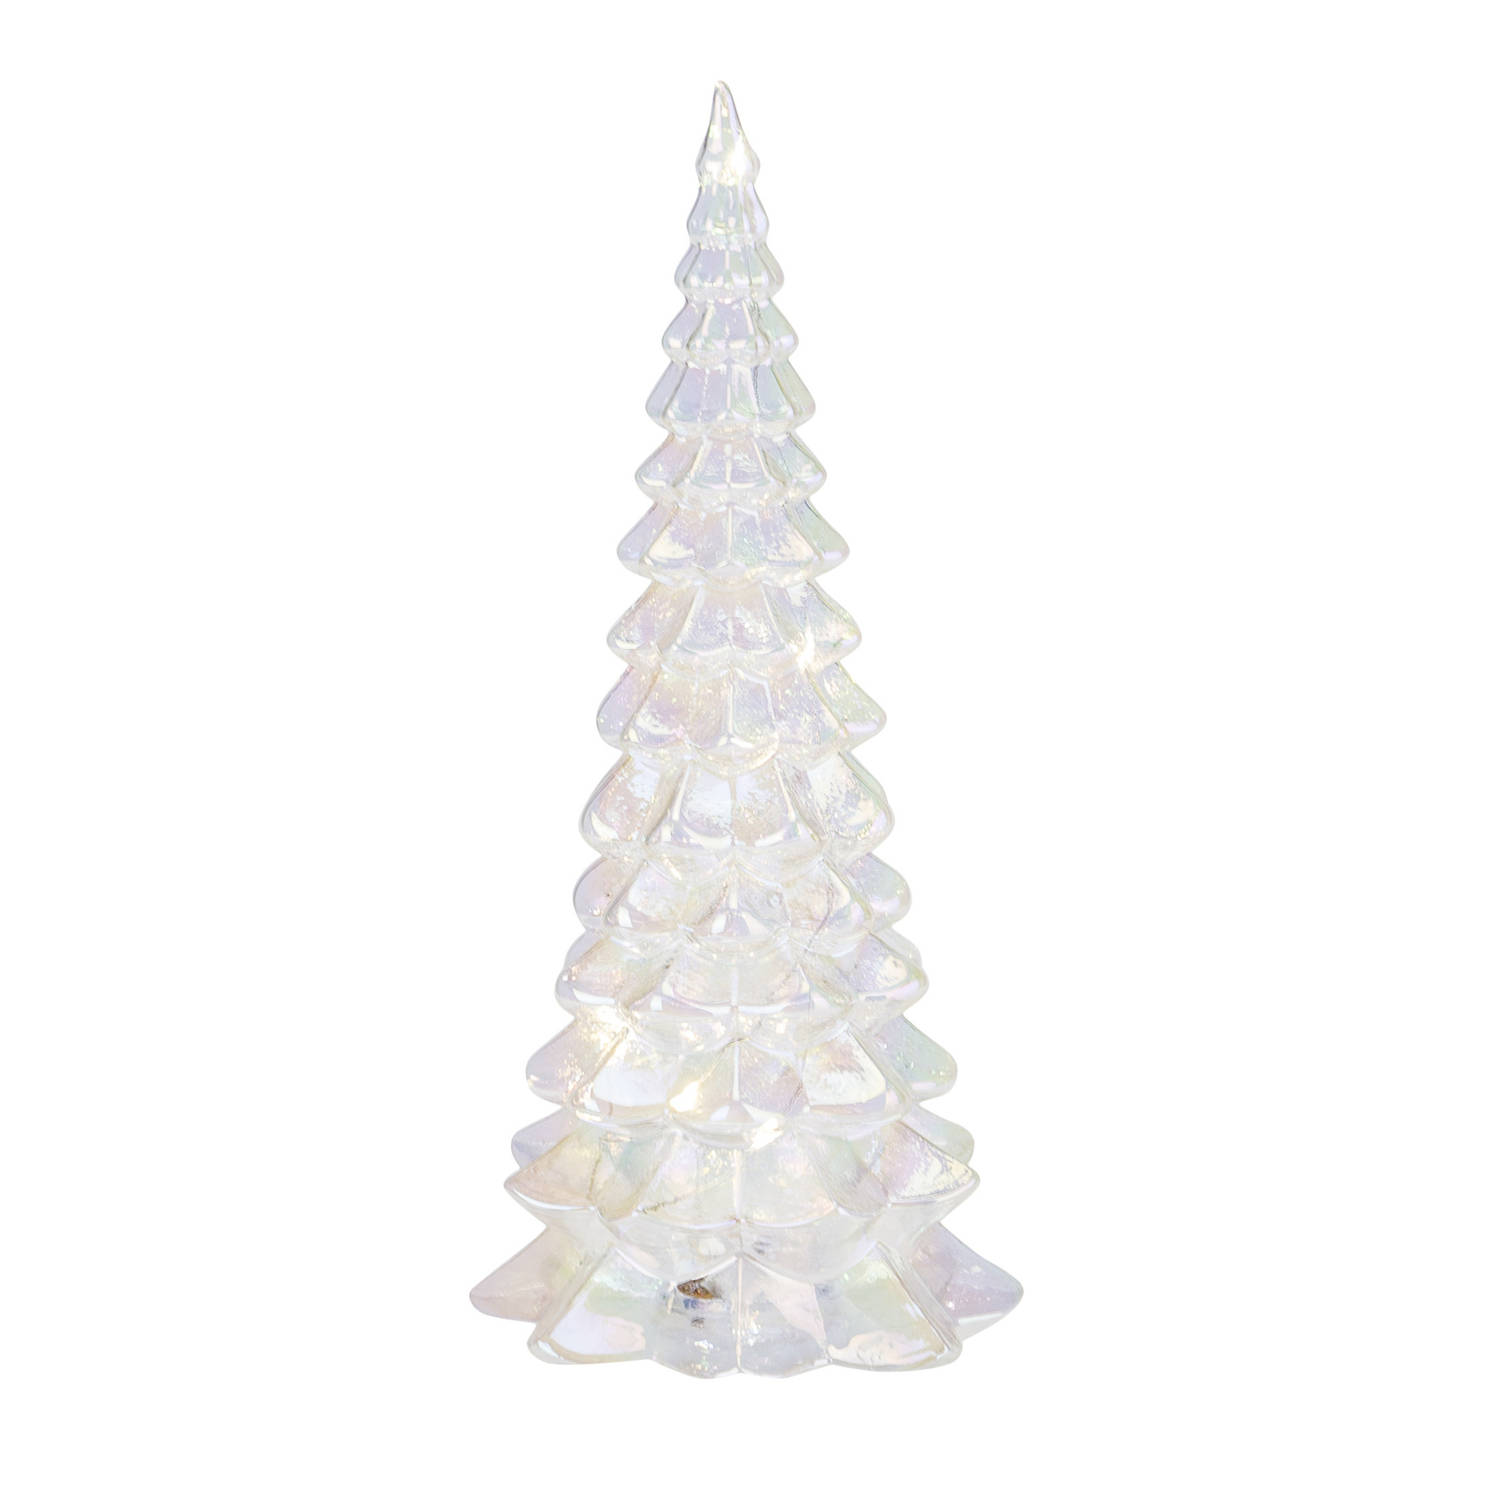 Kerstverlichting Figuren Acryl Piramide Boompje/kerstboompje Met Licht 26 Cm - Kerstverlichting Figuur